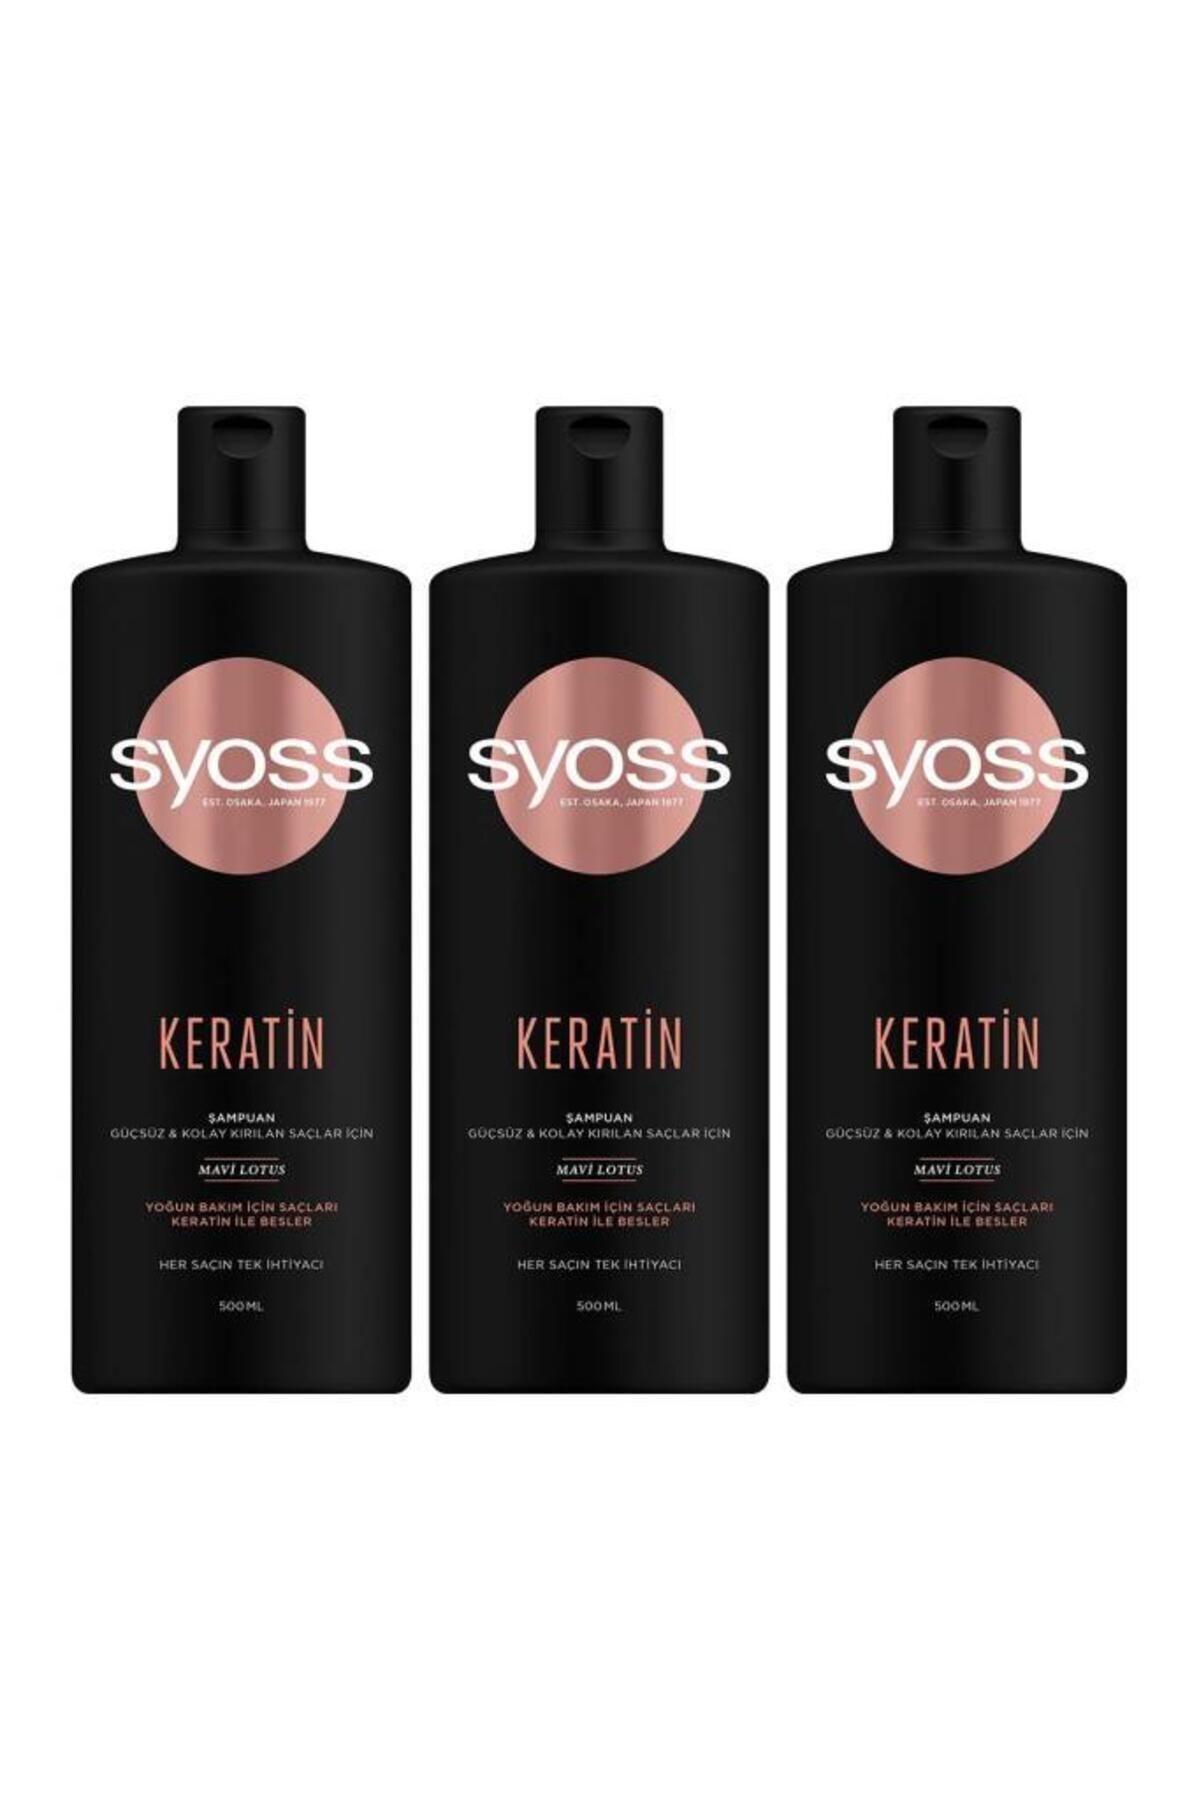 Syoss Keratin Mükemmelliği Şampuan 500 ml 3'lü